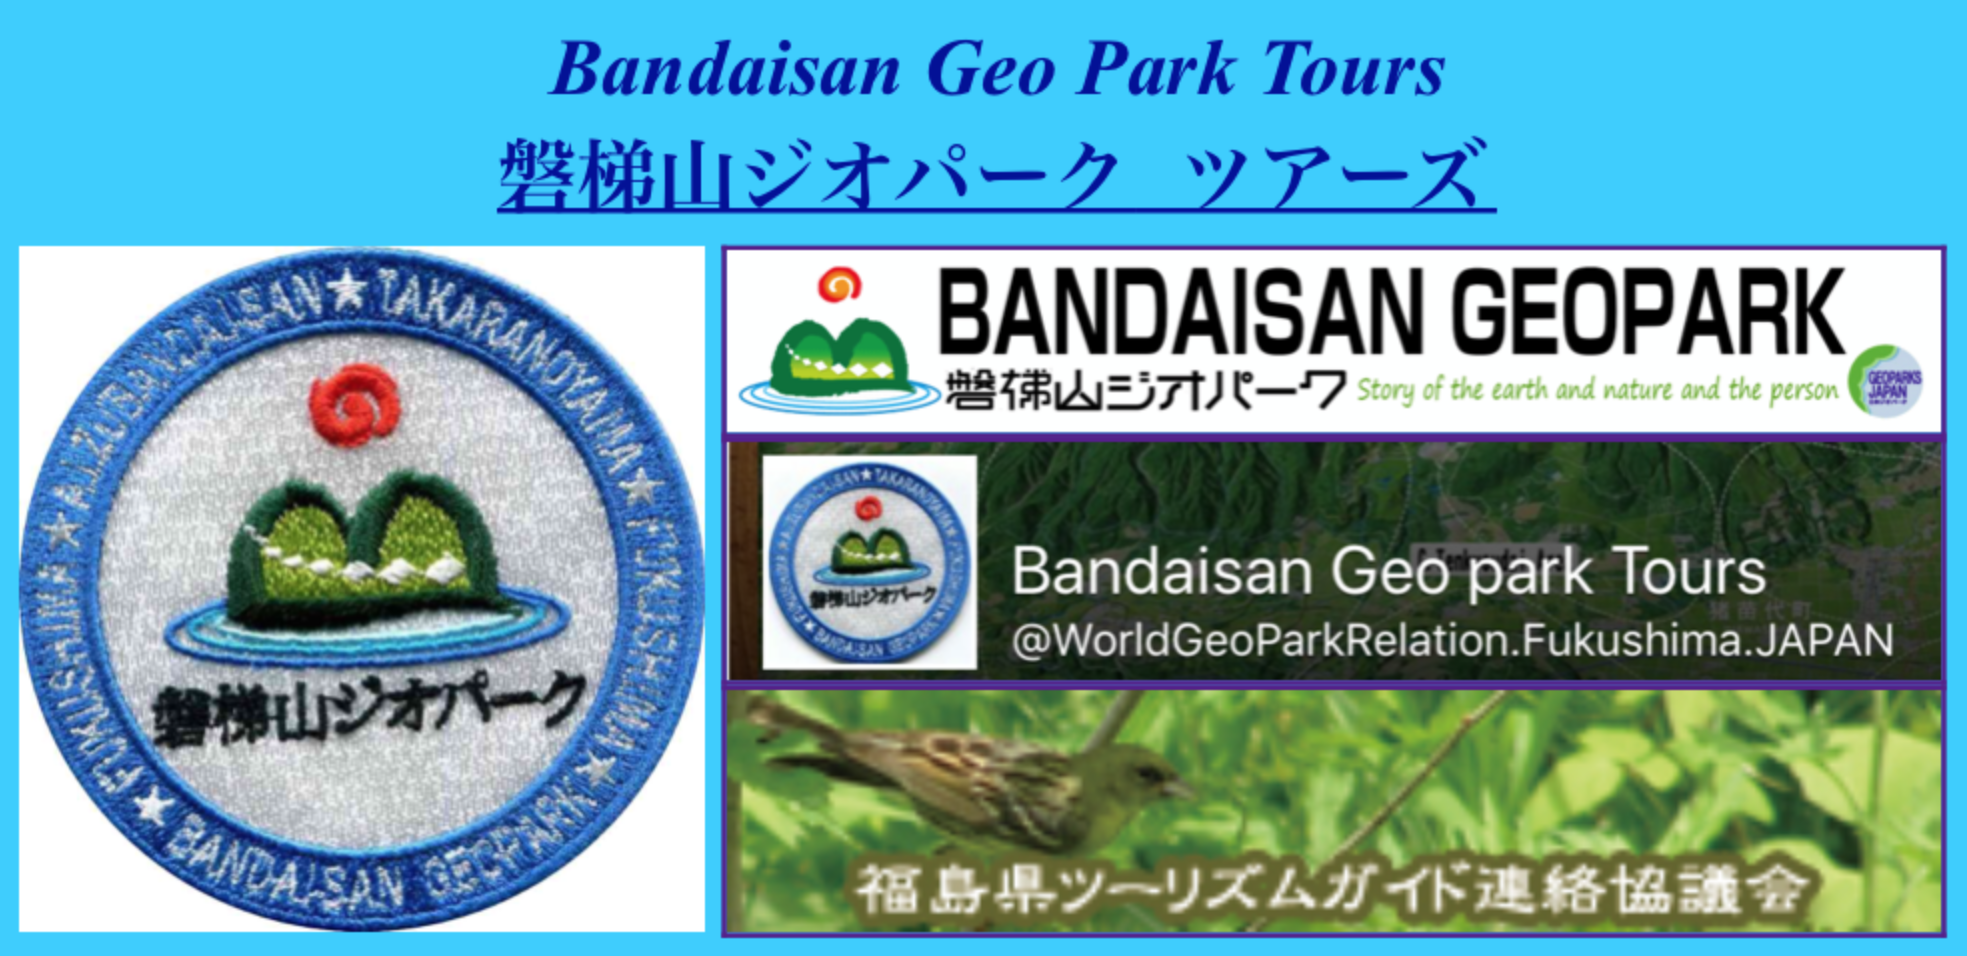 Bandaisan Geo park
                                  Tours